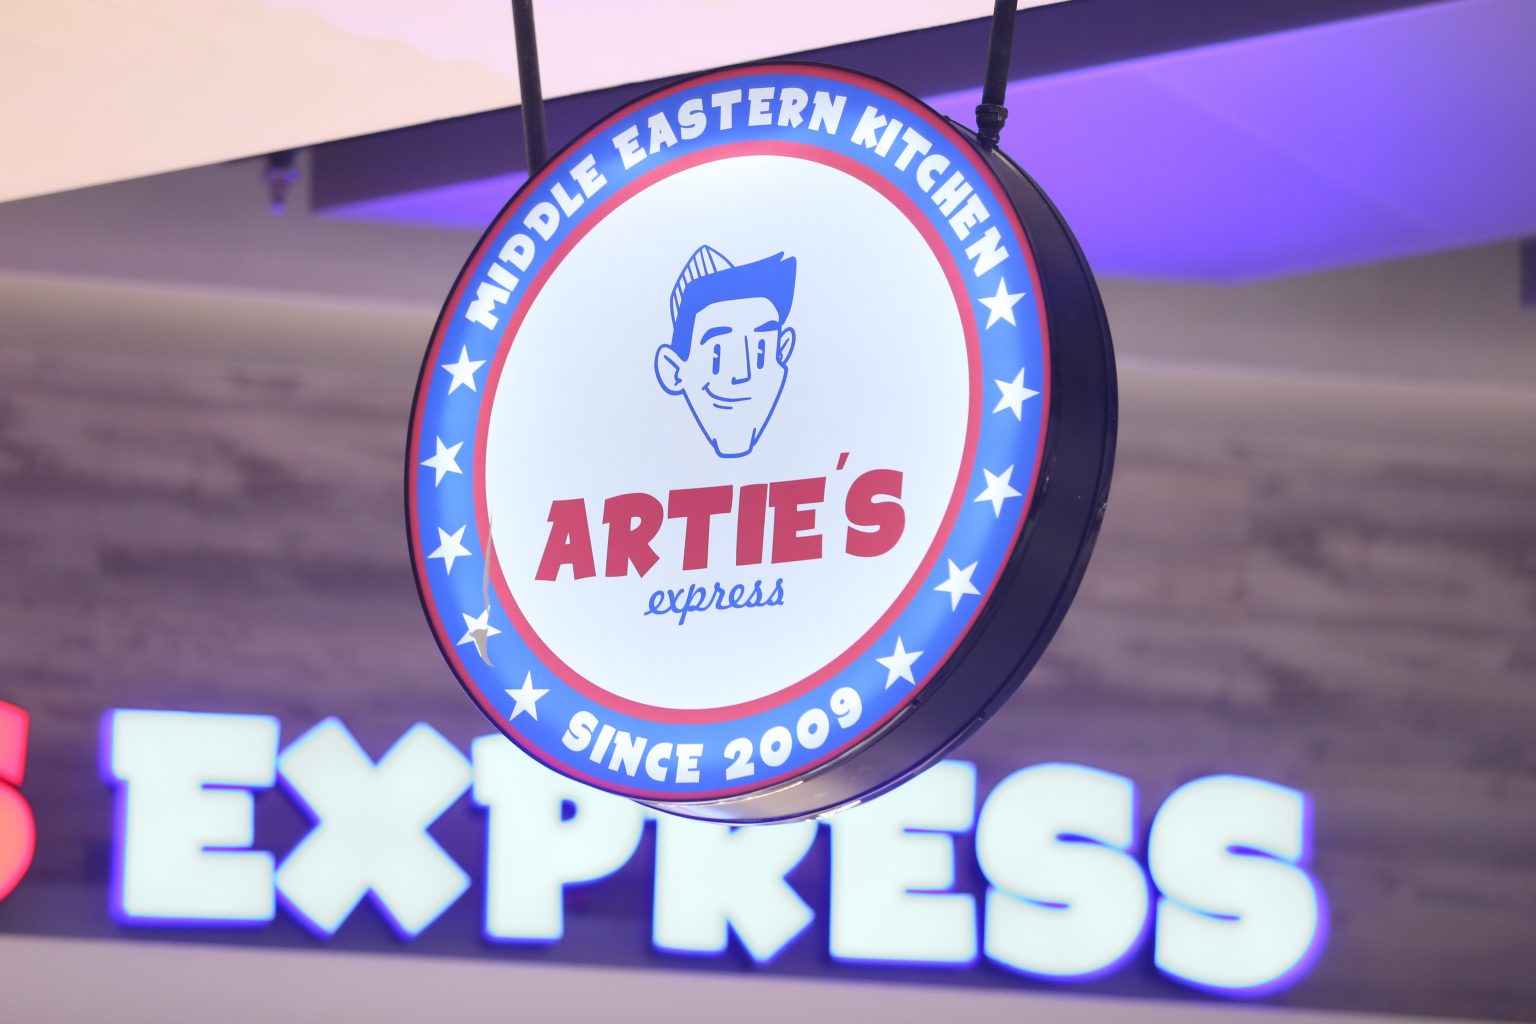 Artie's Express